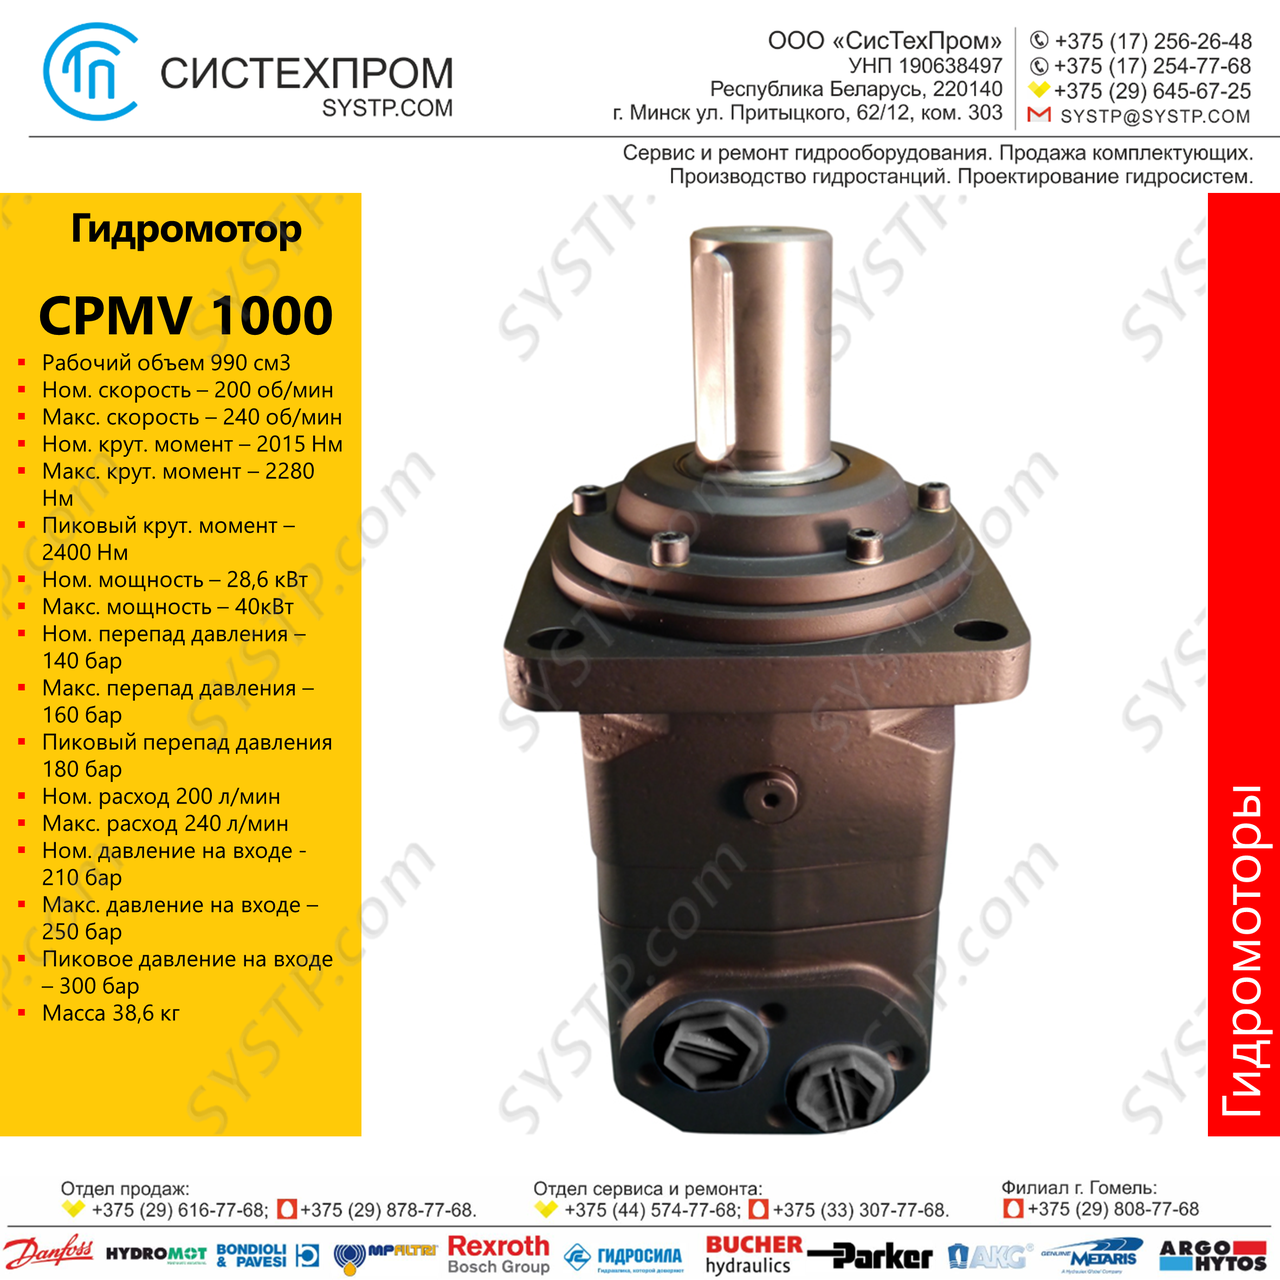 Копия Гидромотор CPMV 1000, фото 1